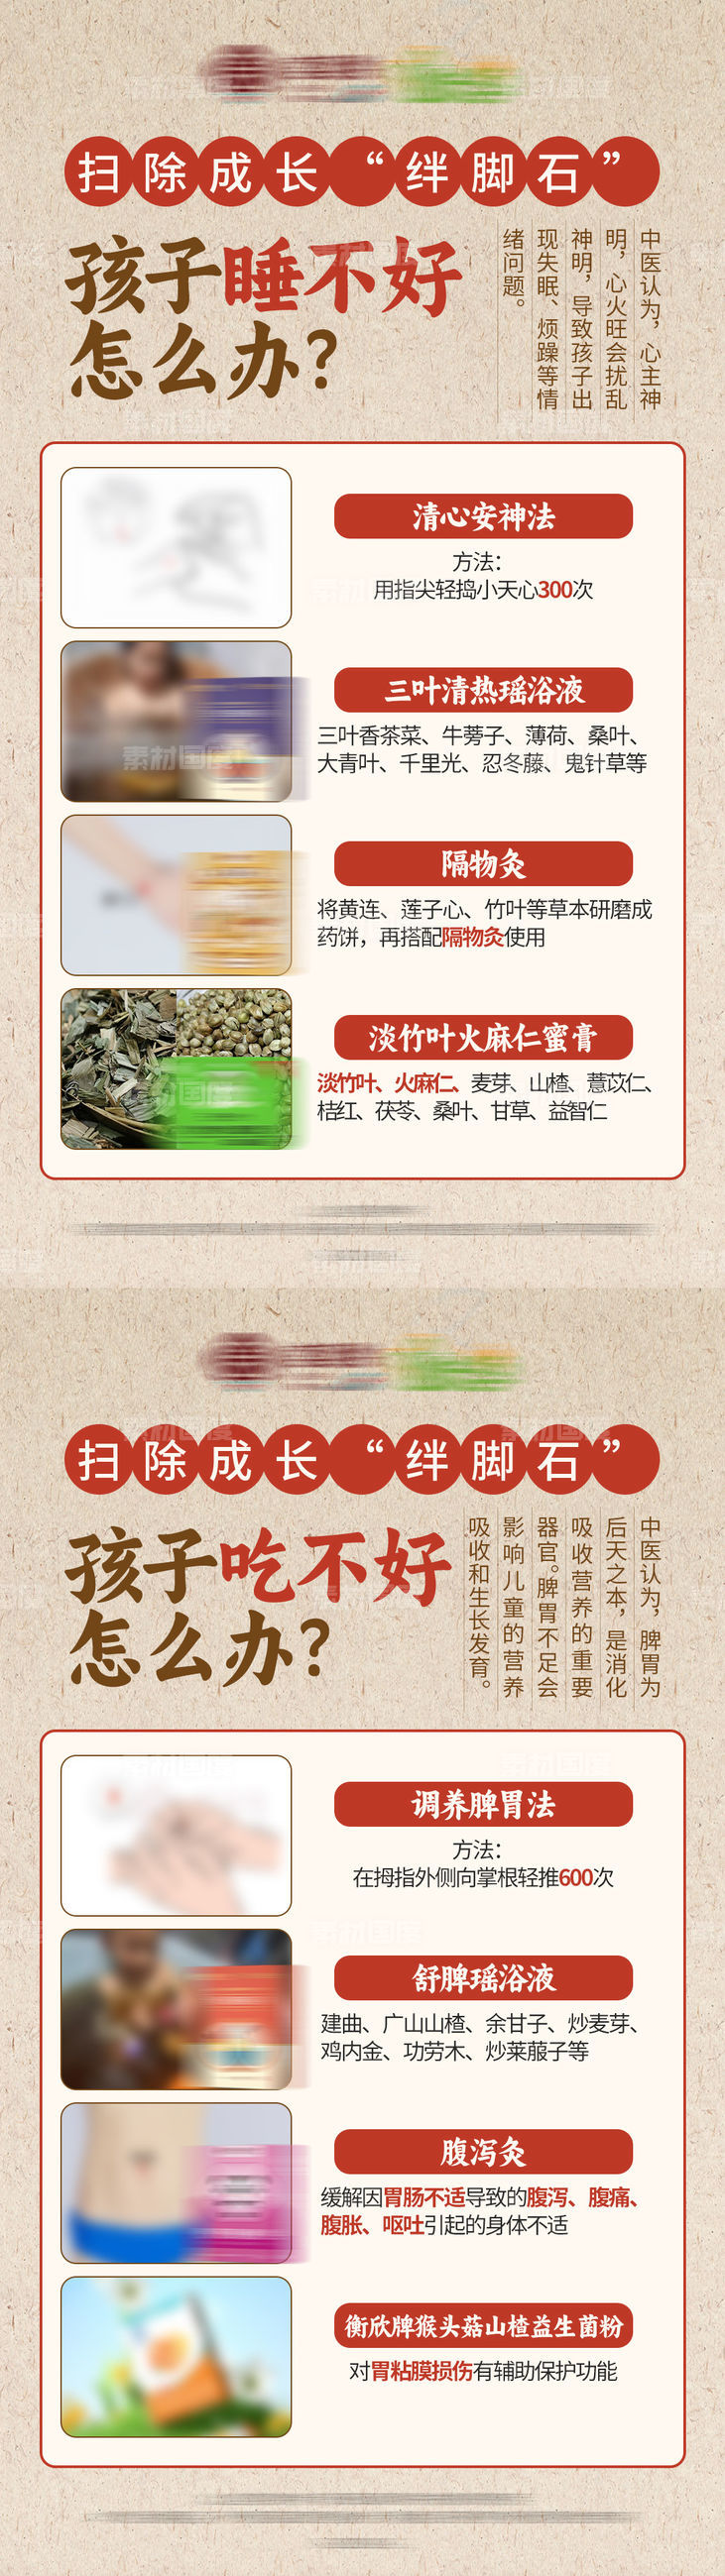 中式健康保健品介绍养生产品海报